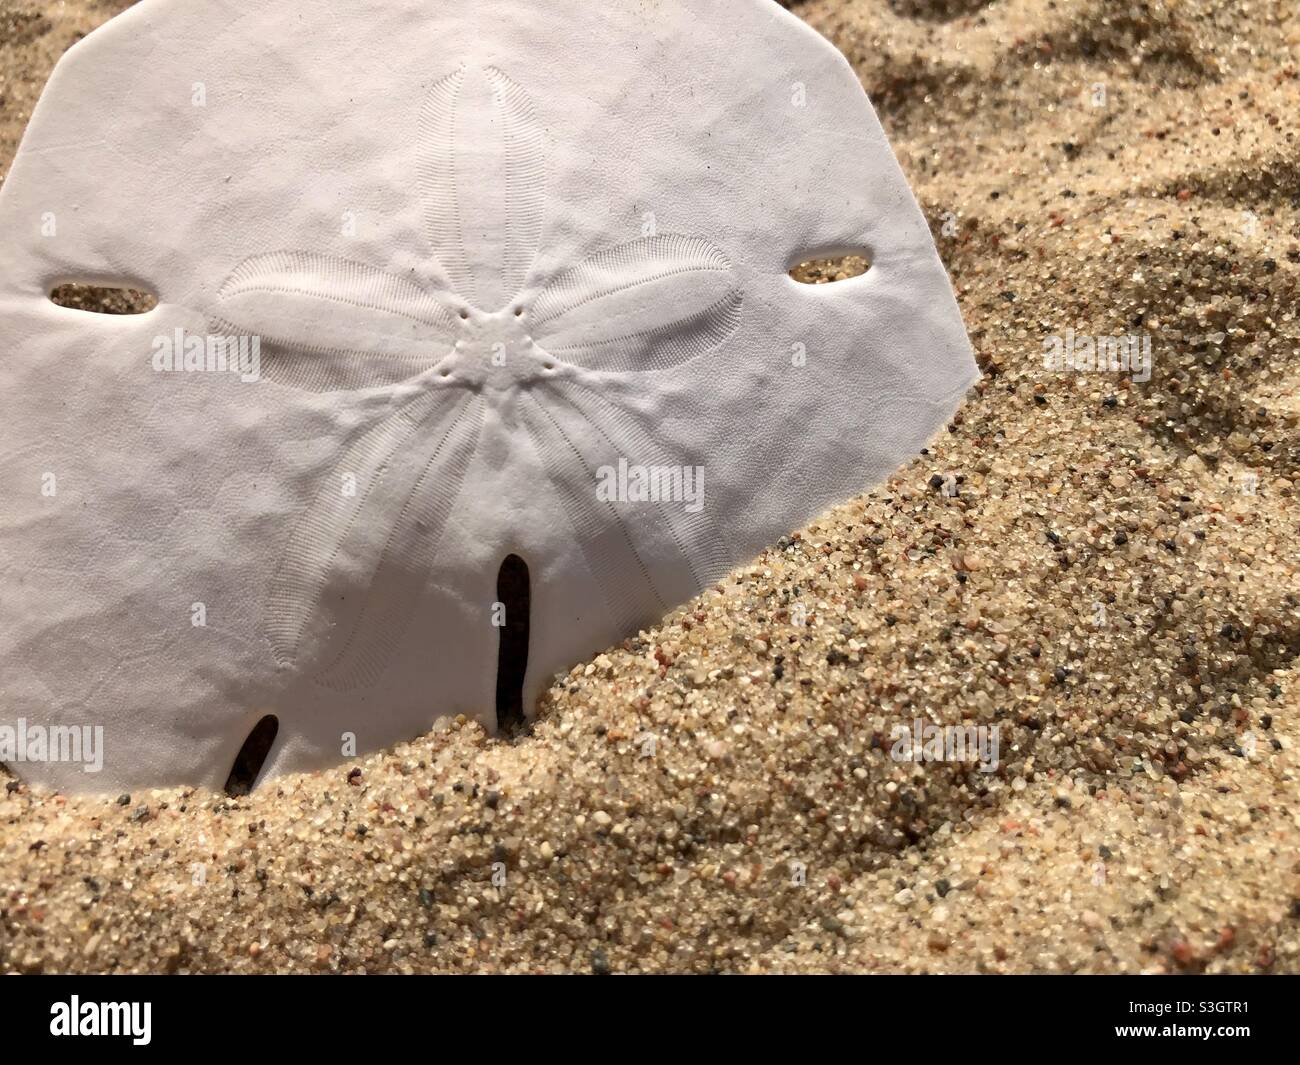 Sand dollar on the beach Stock Photo